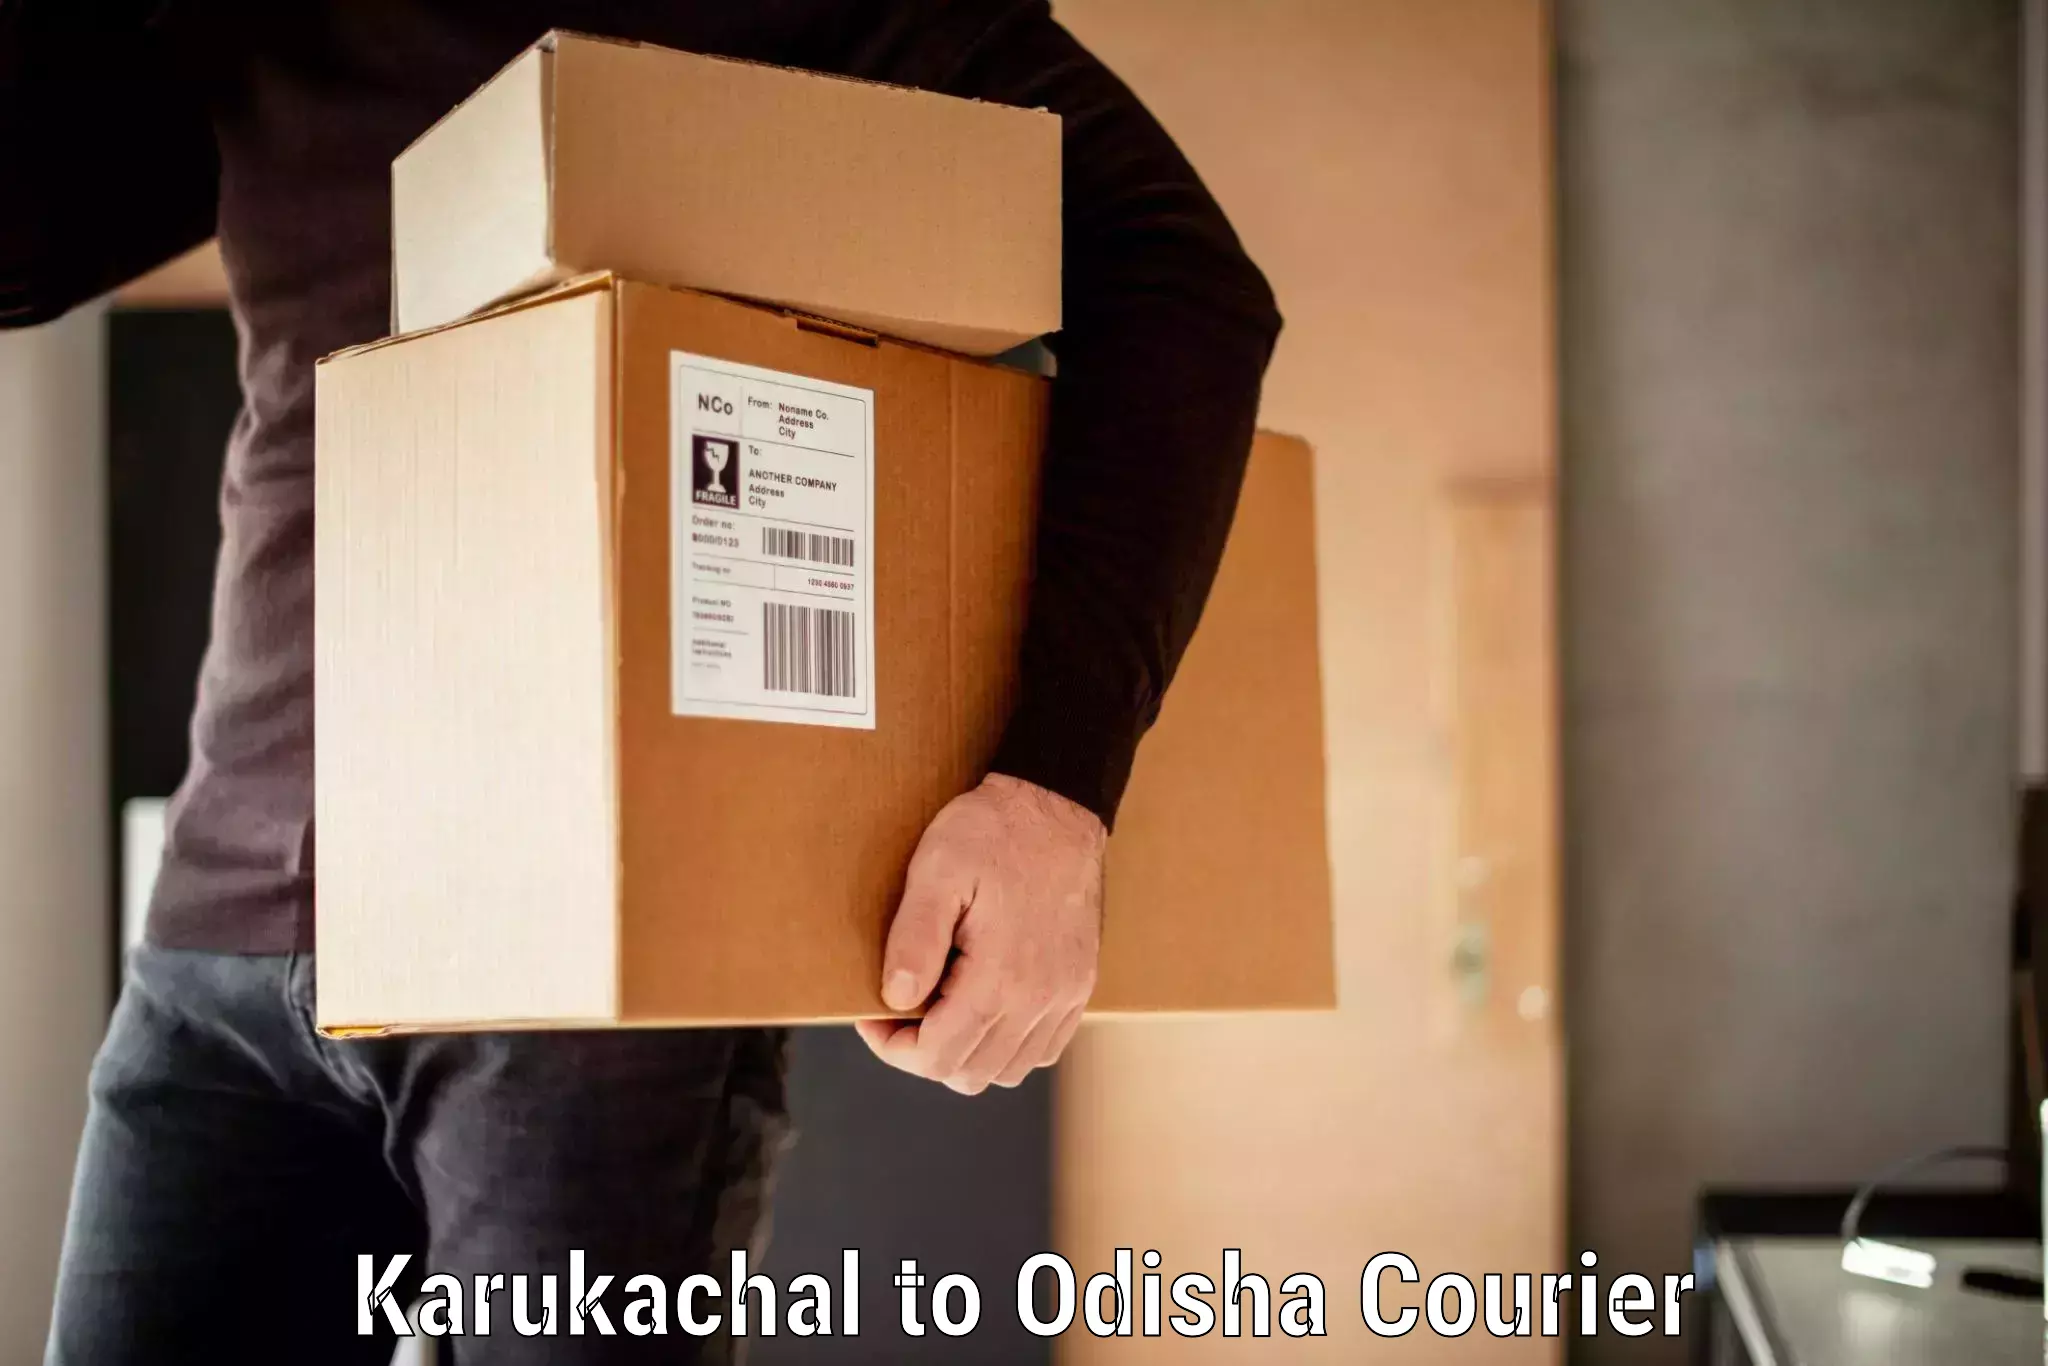 Luggage shipment specialists Karukachal to Nimapara